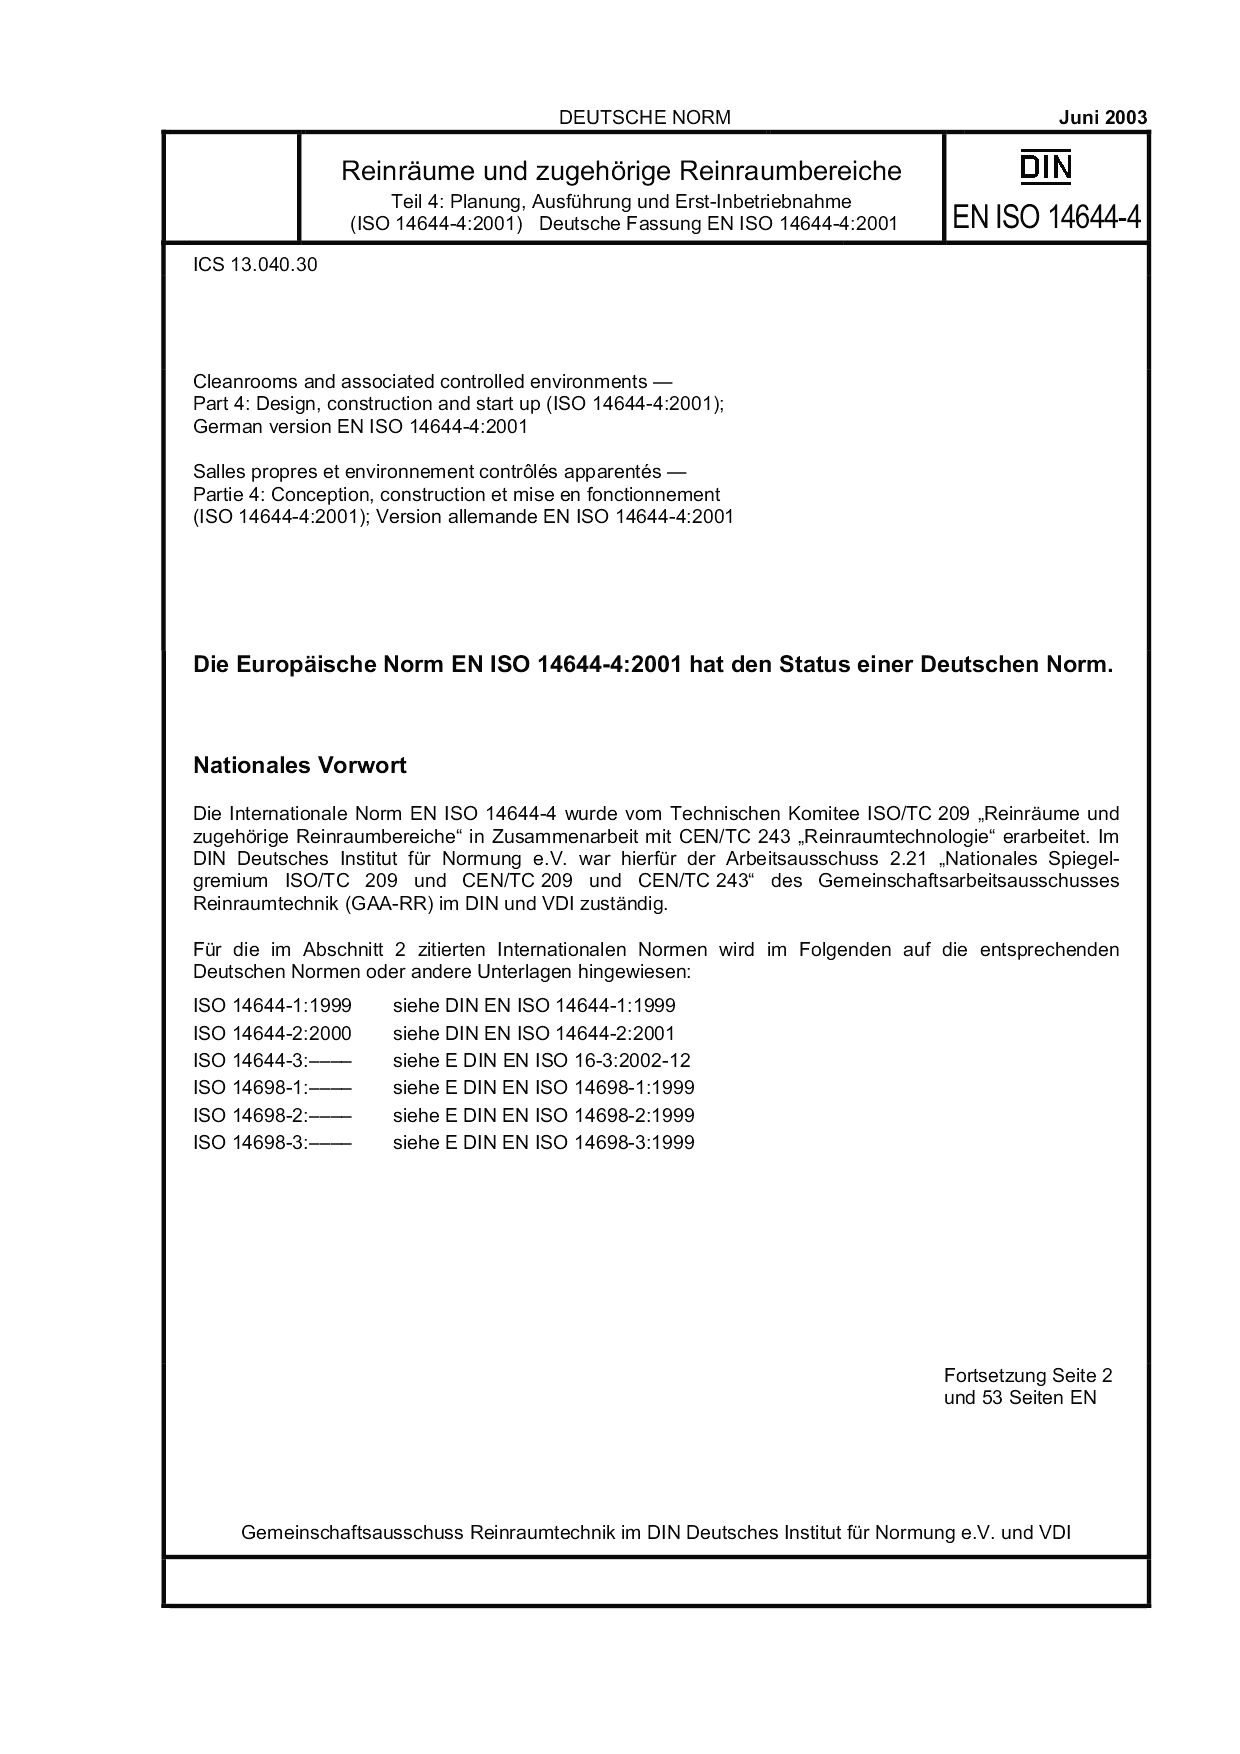 DIN EN ISO 14644-4:2003